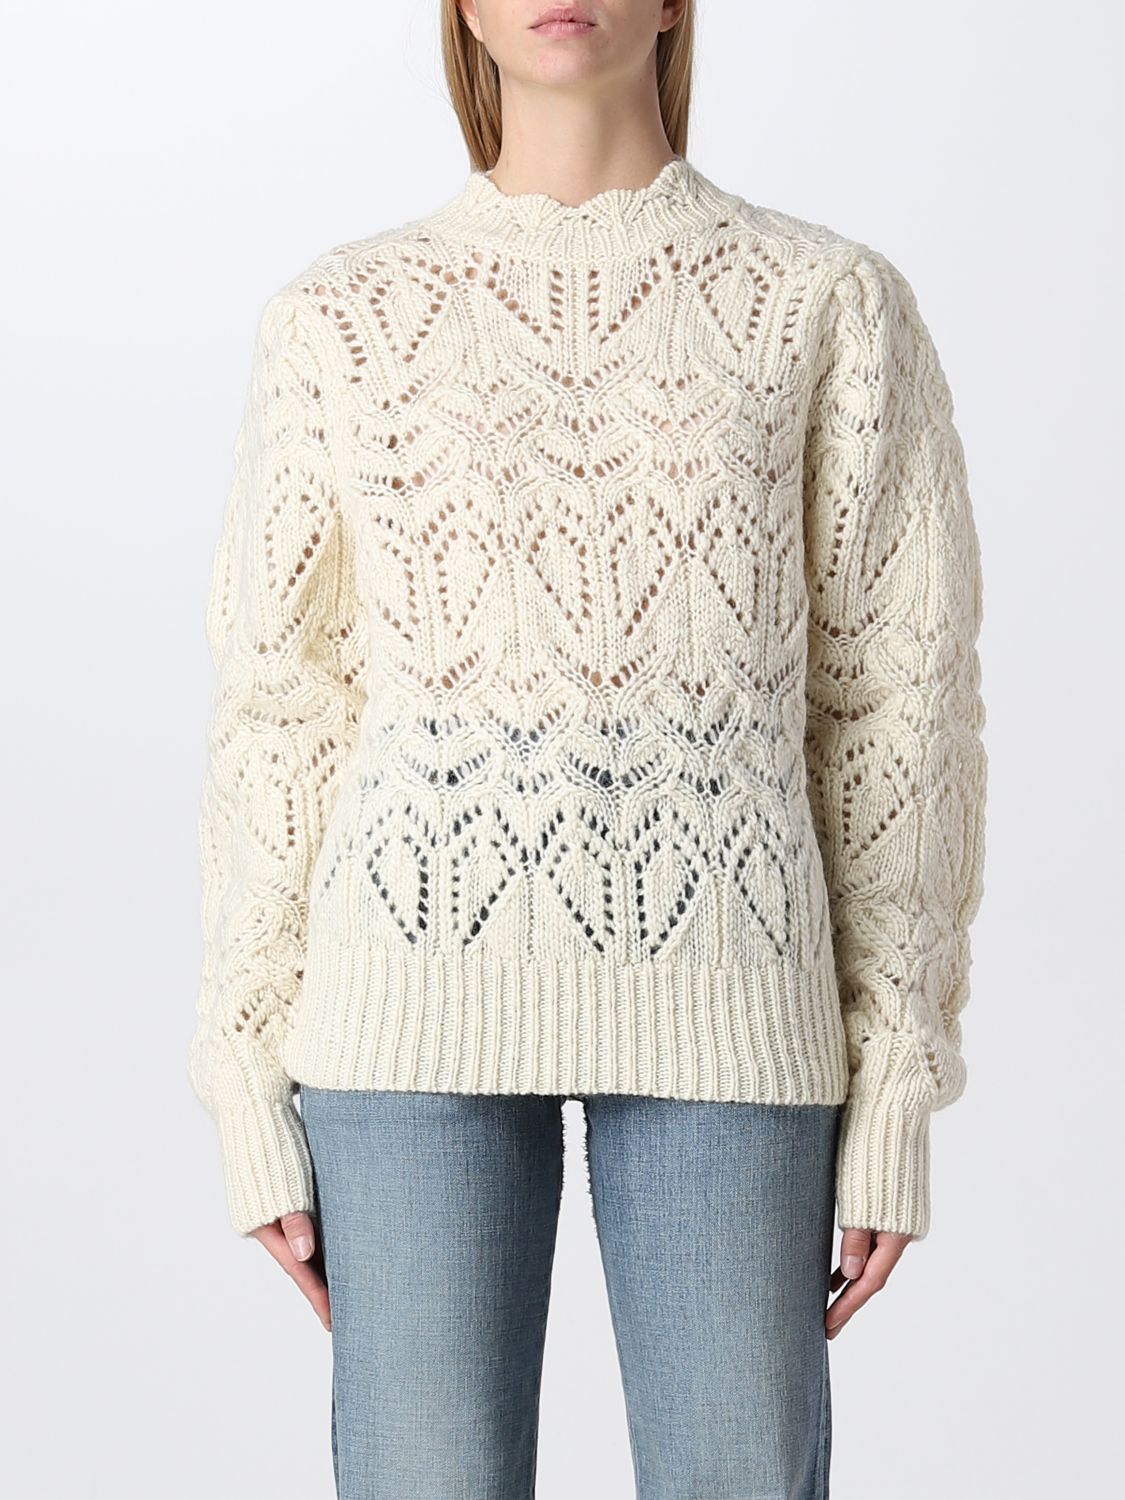 ISABEL MARANT ETOILE: sweater for woman - Ecru | Isabel Marant Etoile ...